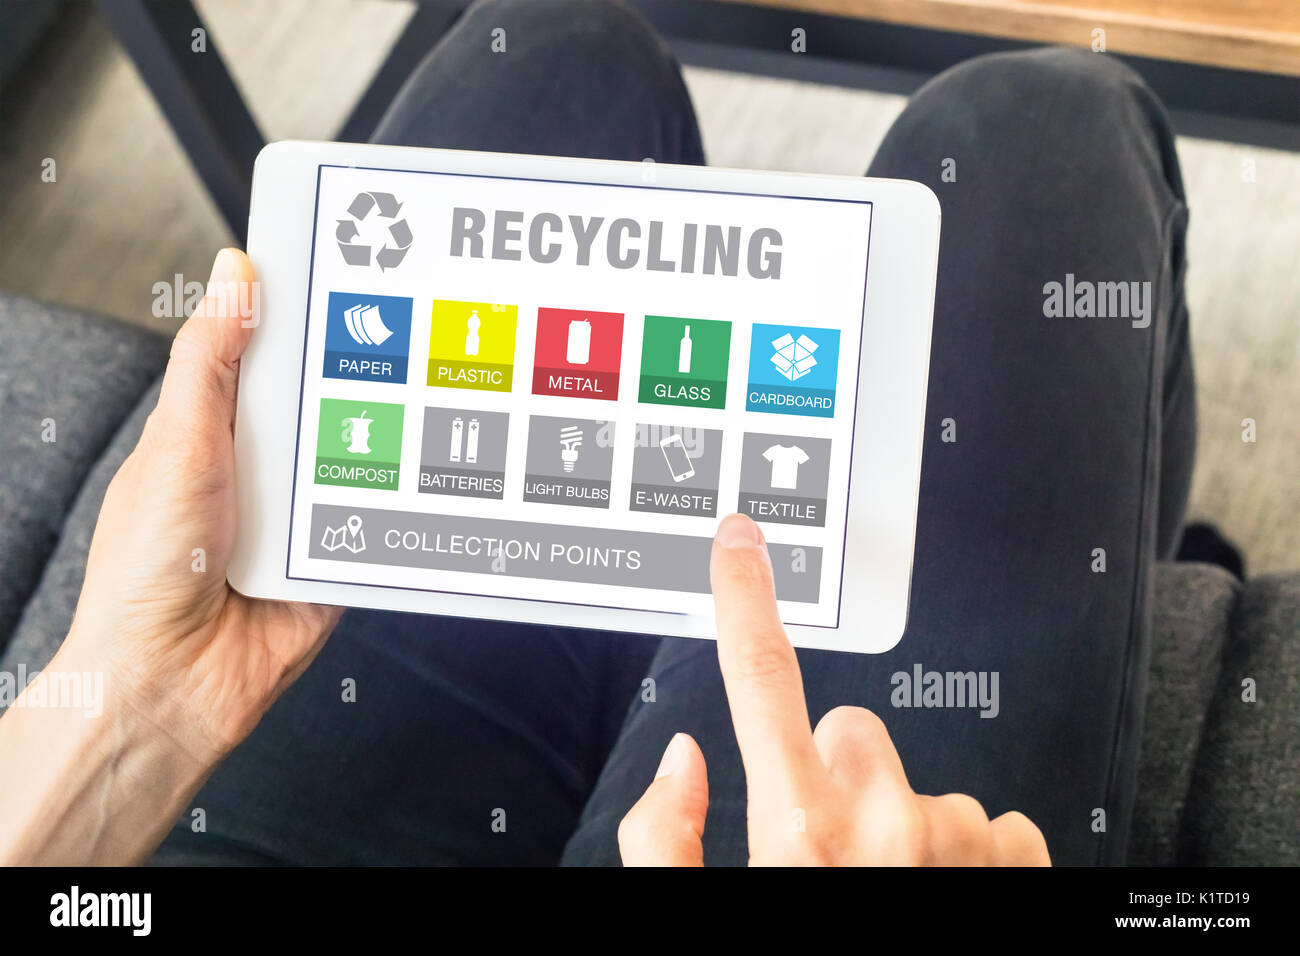 Persona con digital tablet pc con la aplicación web para la clasificación de residuos reciclables (iconos de papel, plástico, metal, vidrio, botellas de e-waste Foto de stock